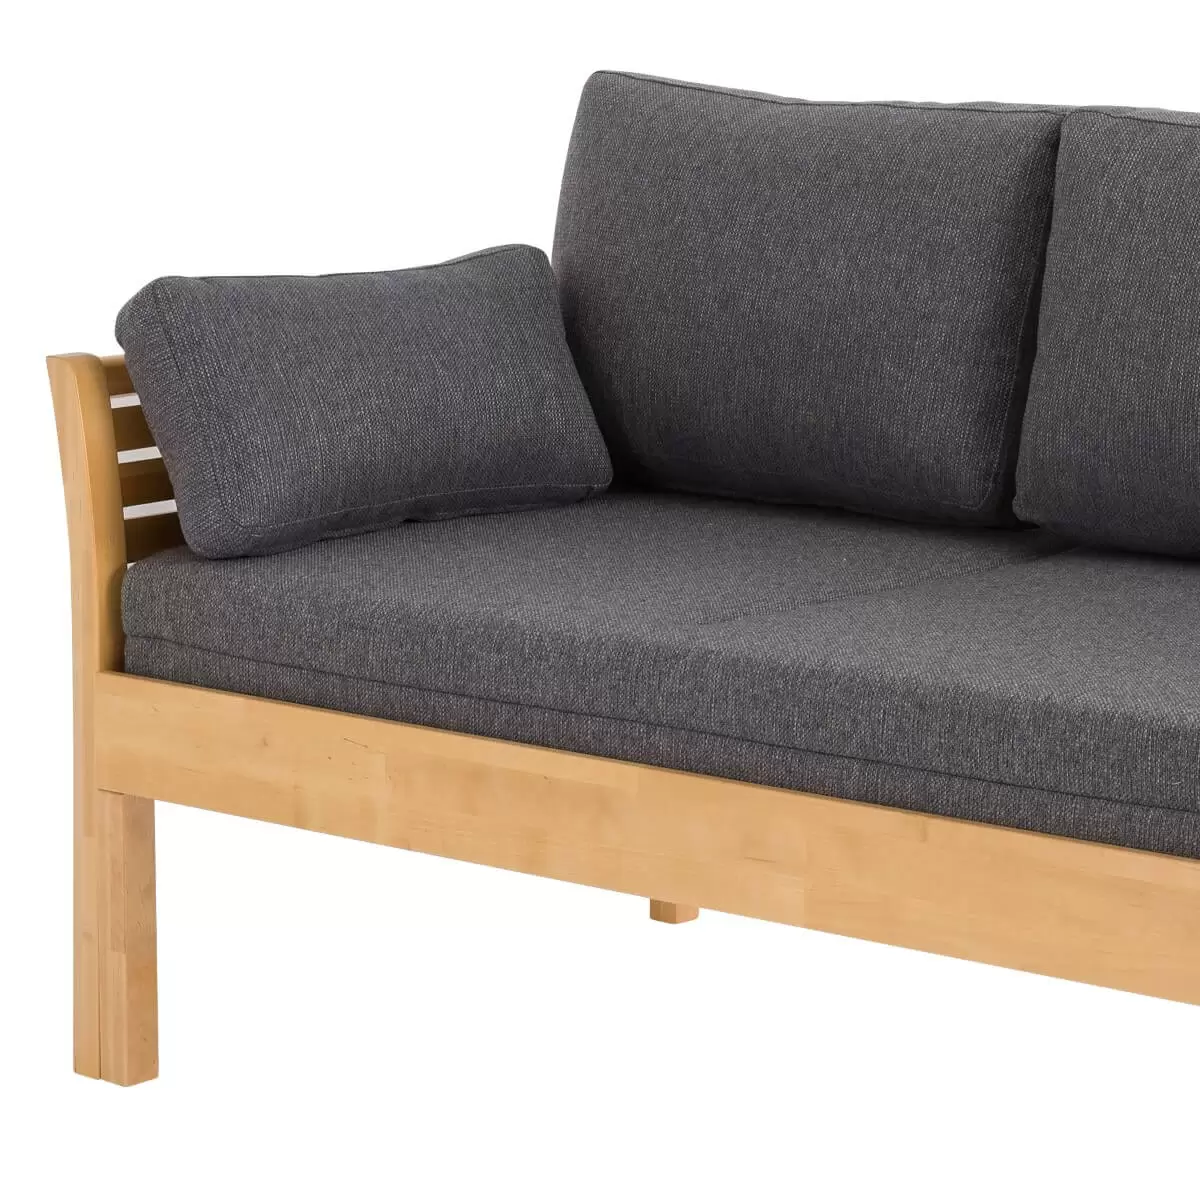 Sofa skandynawska z funkcją spania KANERVA kolor buk, z szarym materacem i pięcioma poduszkami. Zbliżenie lewej części sofy i materaca.